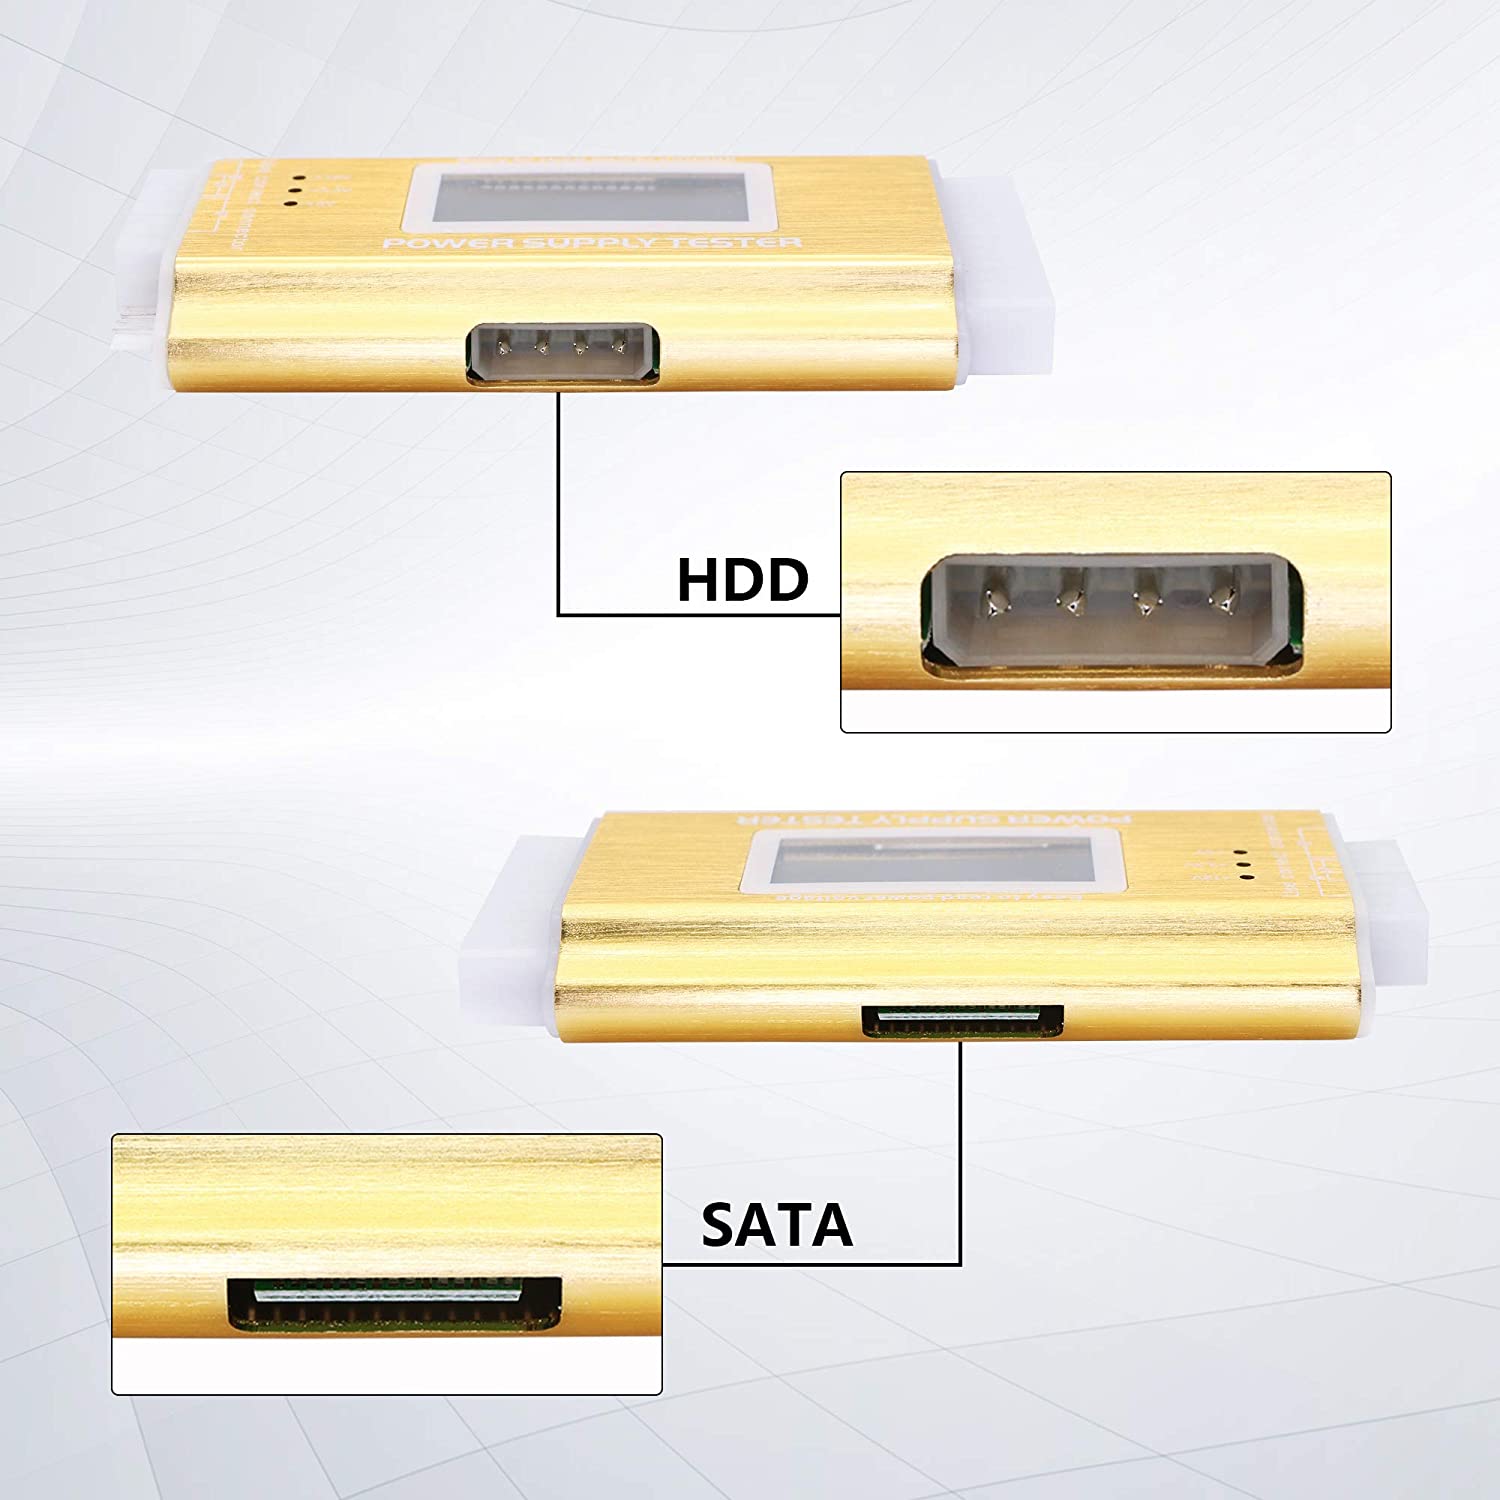 ROGTZ Thiết Bị Test Nguồn ATX Máy Tính 20 + 24 Pin Hiển Thị Màn Hình LCD (Vàng) - Hàng Nhập Khẩu